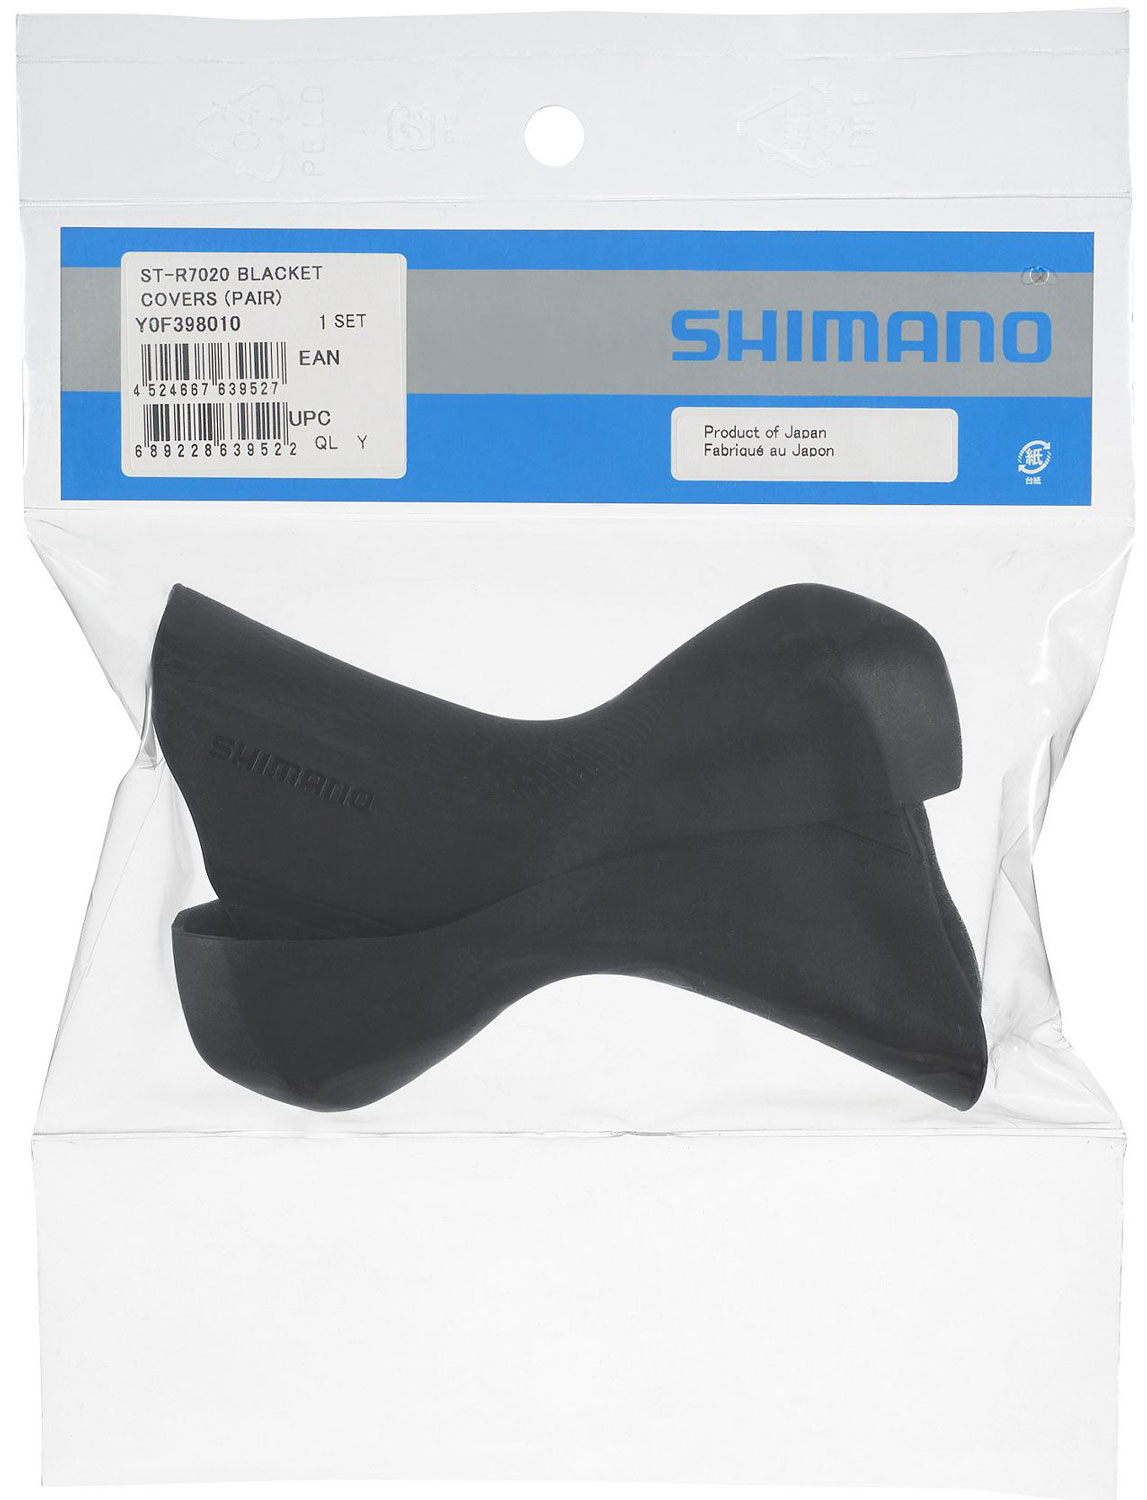 Shimano_105-ST-R7020-7025-Bremsgriffuberzuge_Y0F398010_b